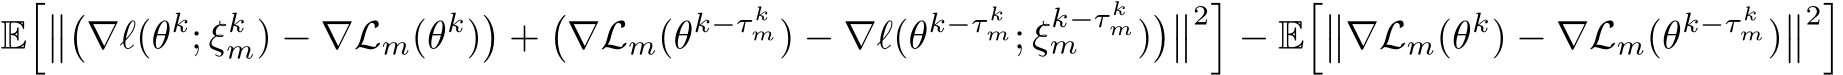 E����∇ℓ(θk; ξkm) − ∇Lm(θk)�+�∇Lm(θk−τ km) − ∇ℓ(θk−τ km; ξk−τ kmm )���2�− E���∇Lm(θk) − ∇Lm(θk−τ km)��2�